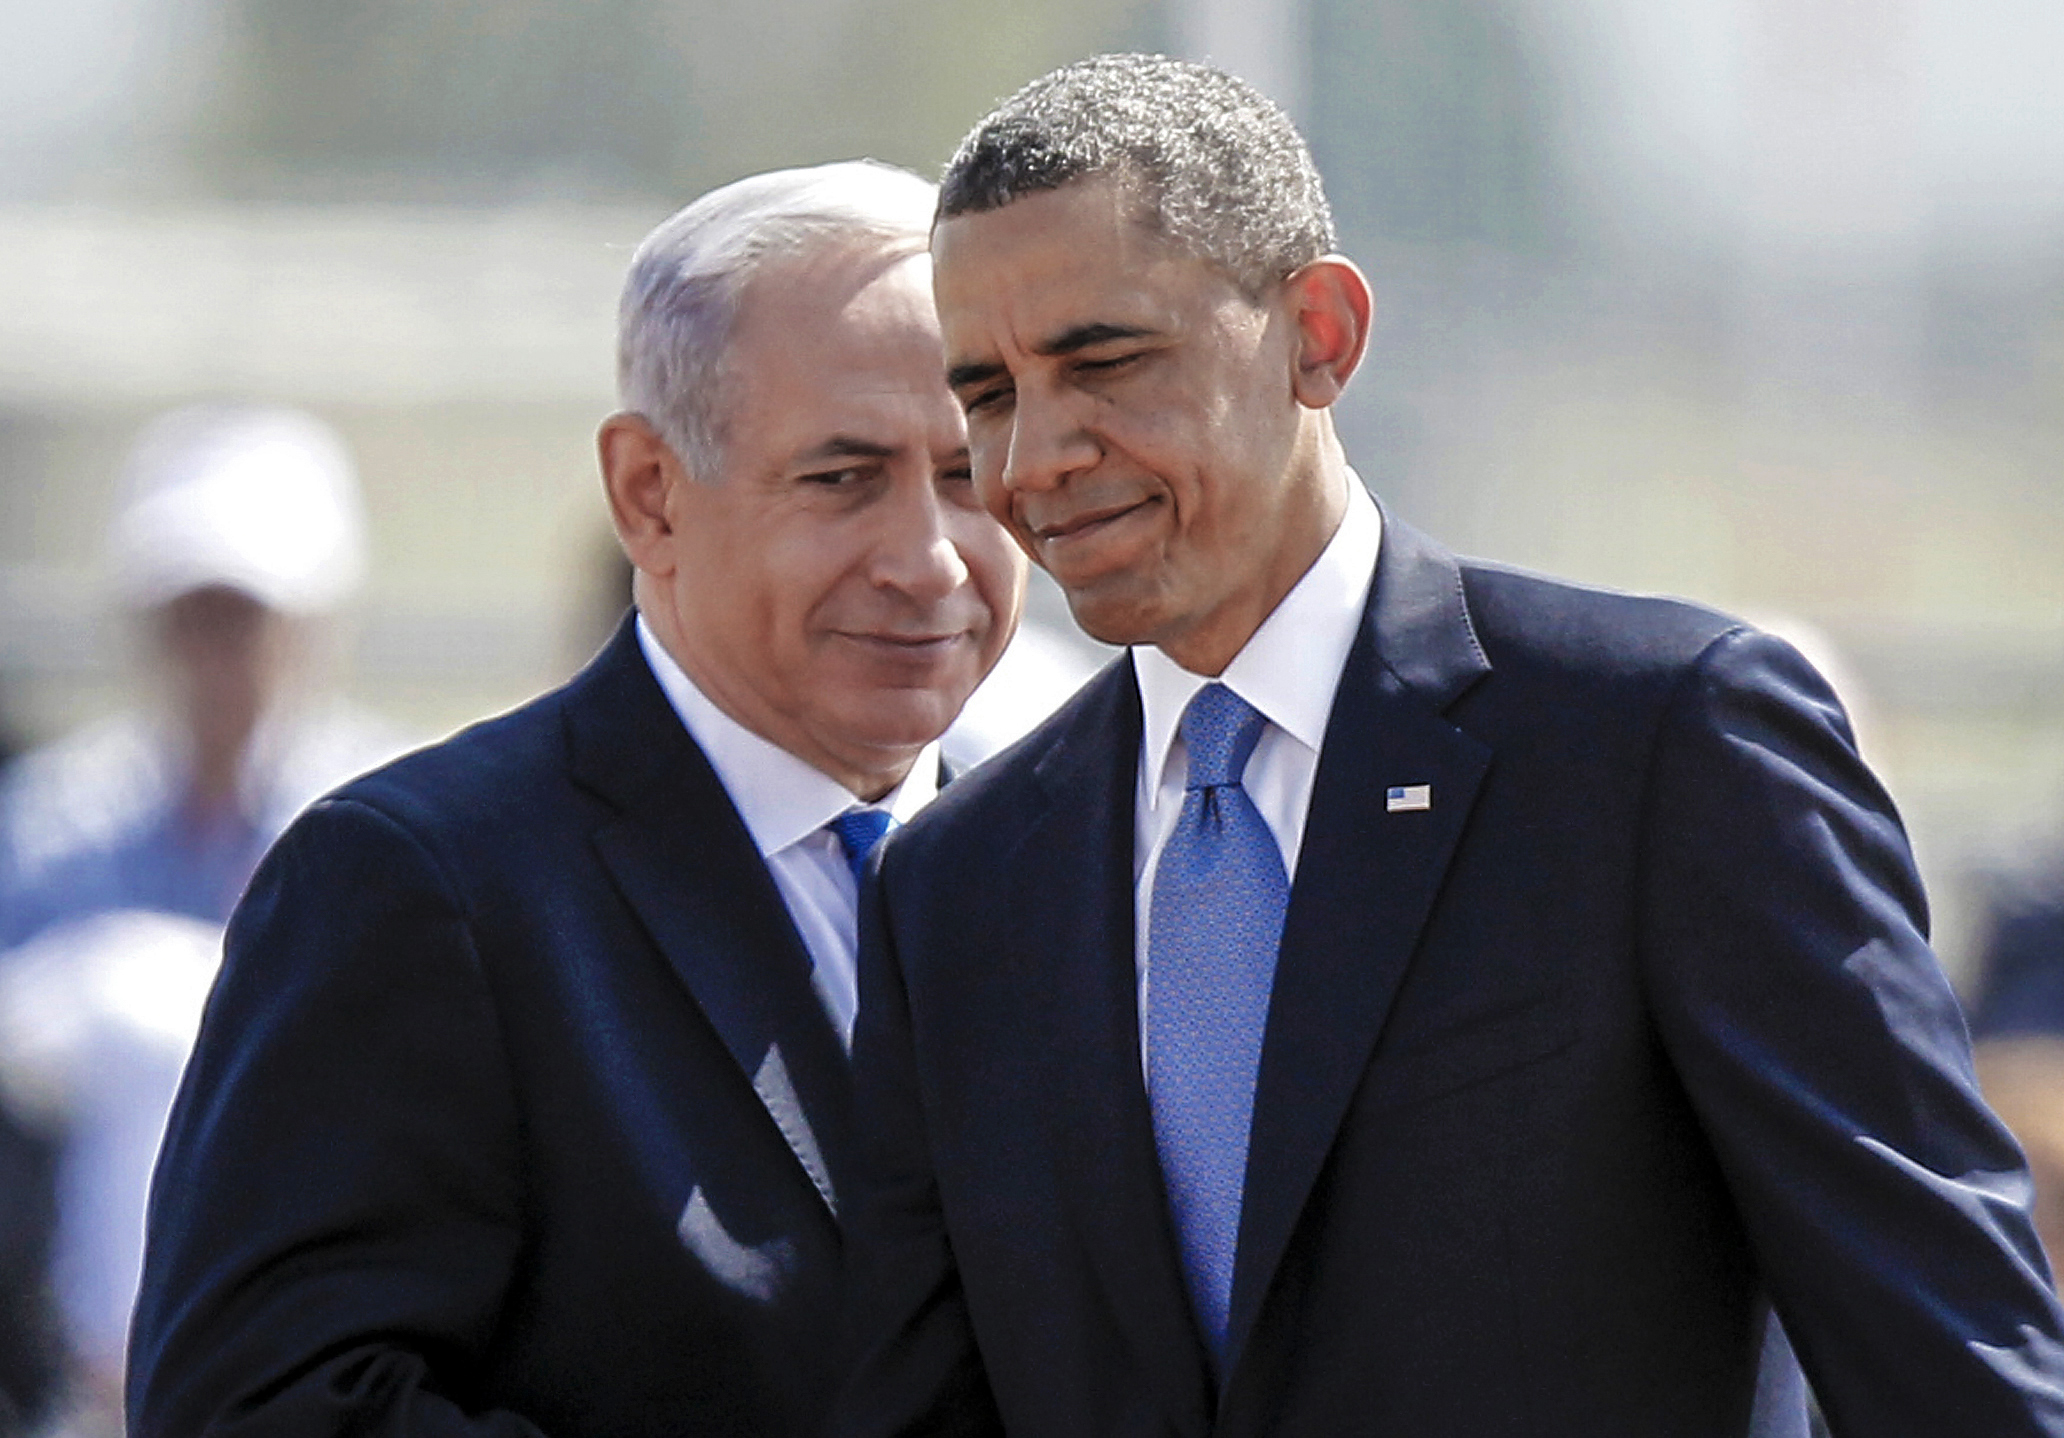 Benjamin Netanyahu and President Obama meet.